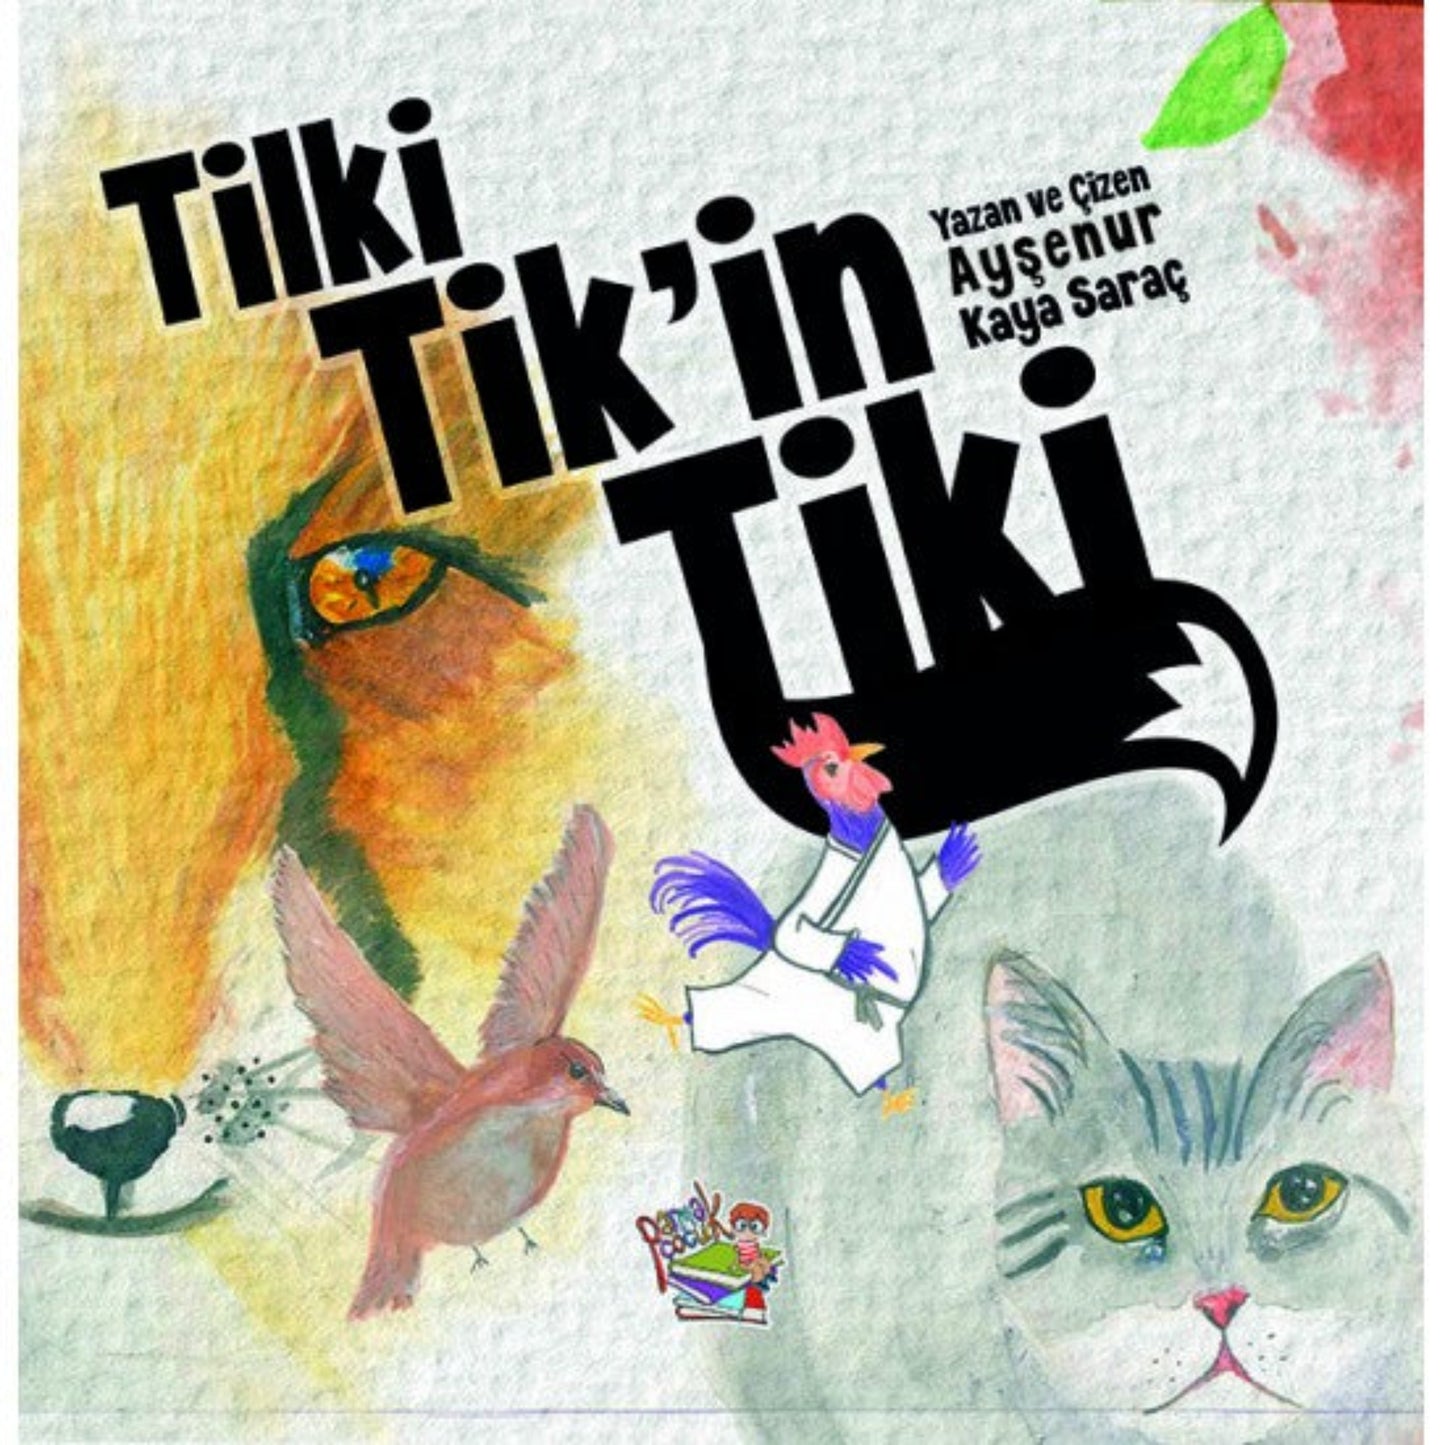 Tilki Tik'in Tiki